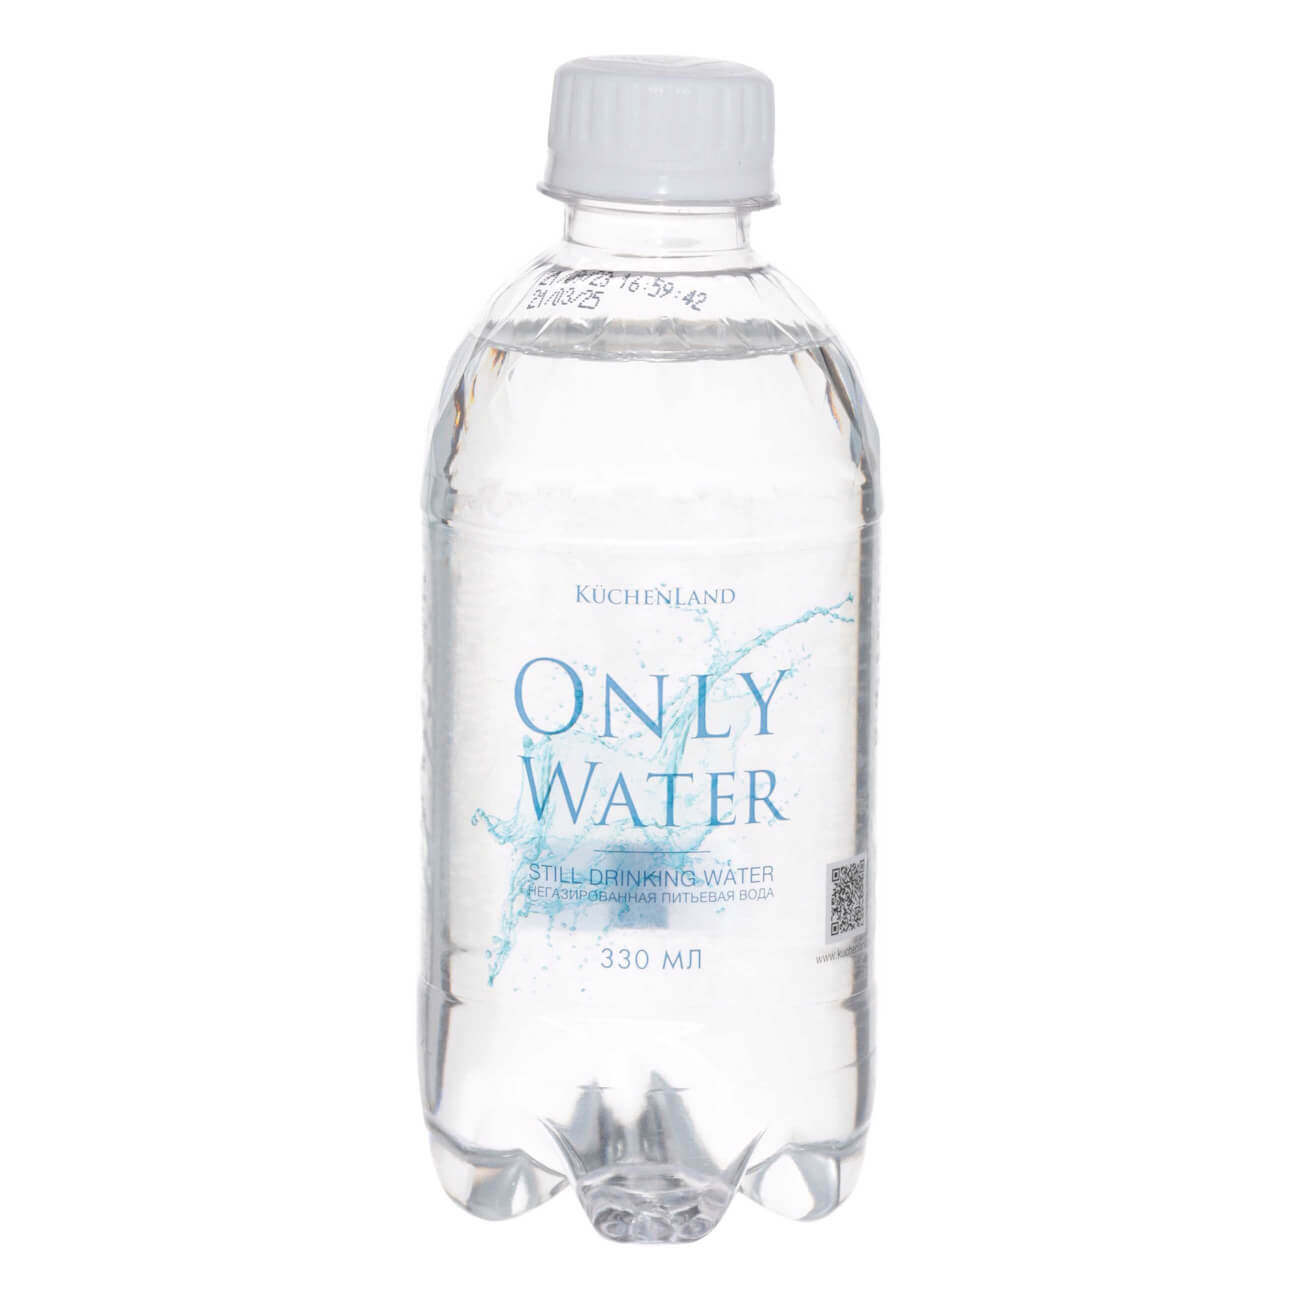 Вода, 330 мл, питьевая, негазированная, в бутылке, Only water вода 330 мл питьевая негазированная в бутылке only water